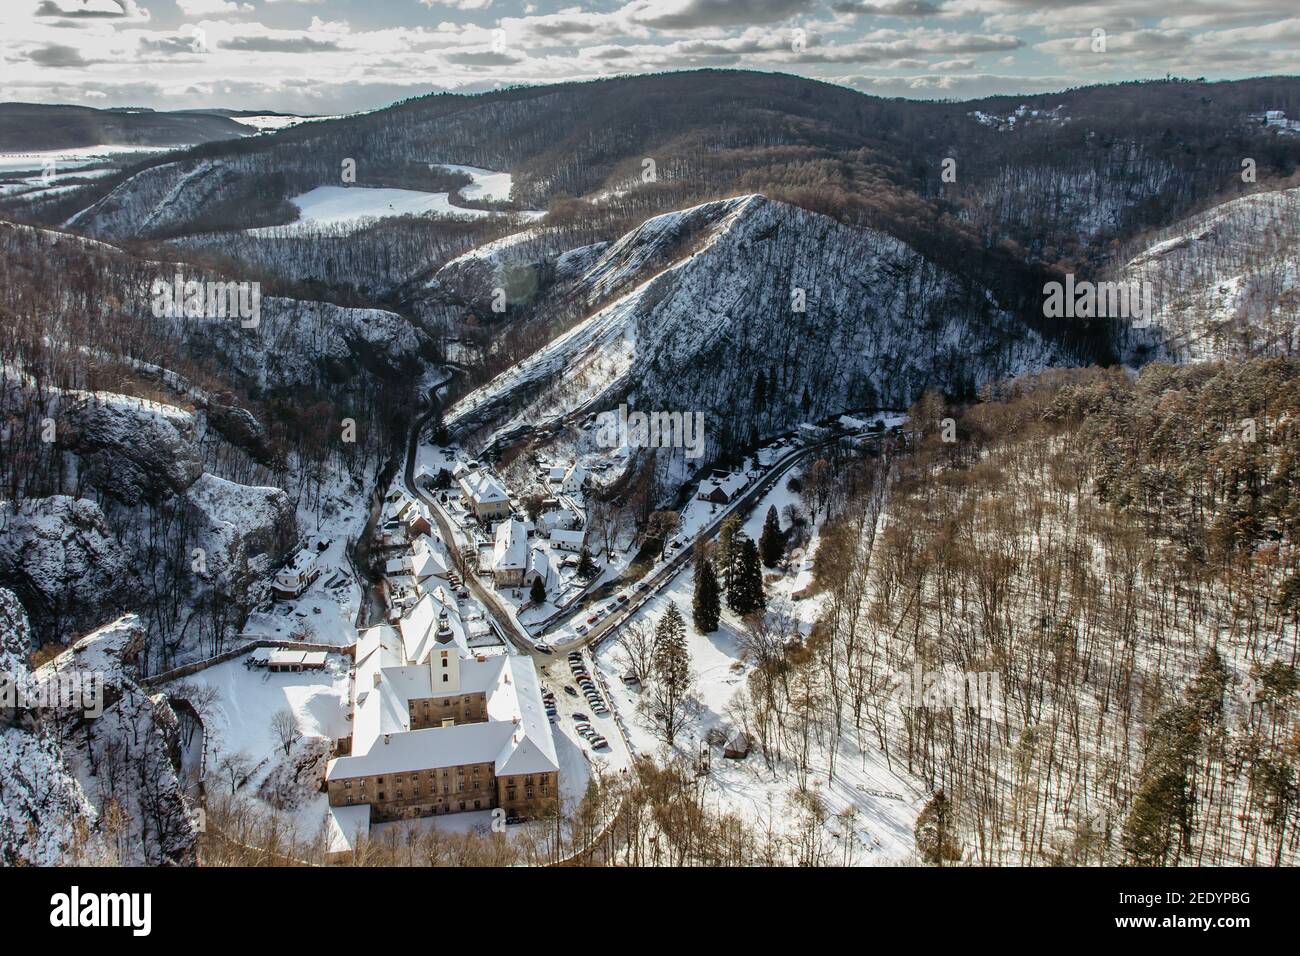 Vista aérea de invierno de Svaty Jan pod Skalou, pequeño pueblo pintoresco en Bohemia Central, República Checa. Monasterio escondido bajo acantilados y rocas Foto de stock